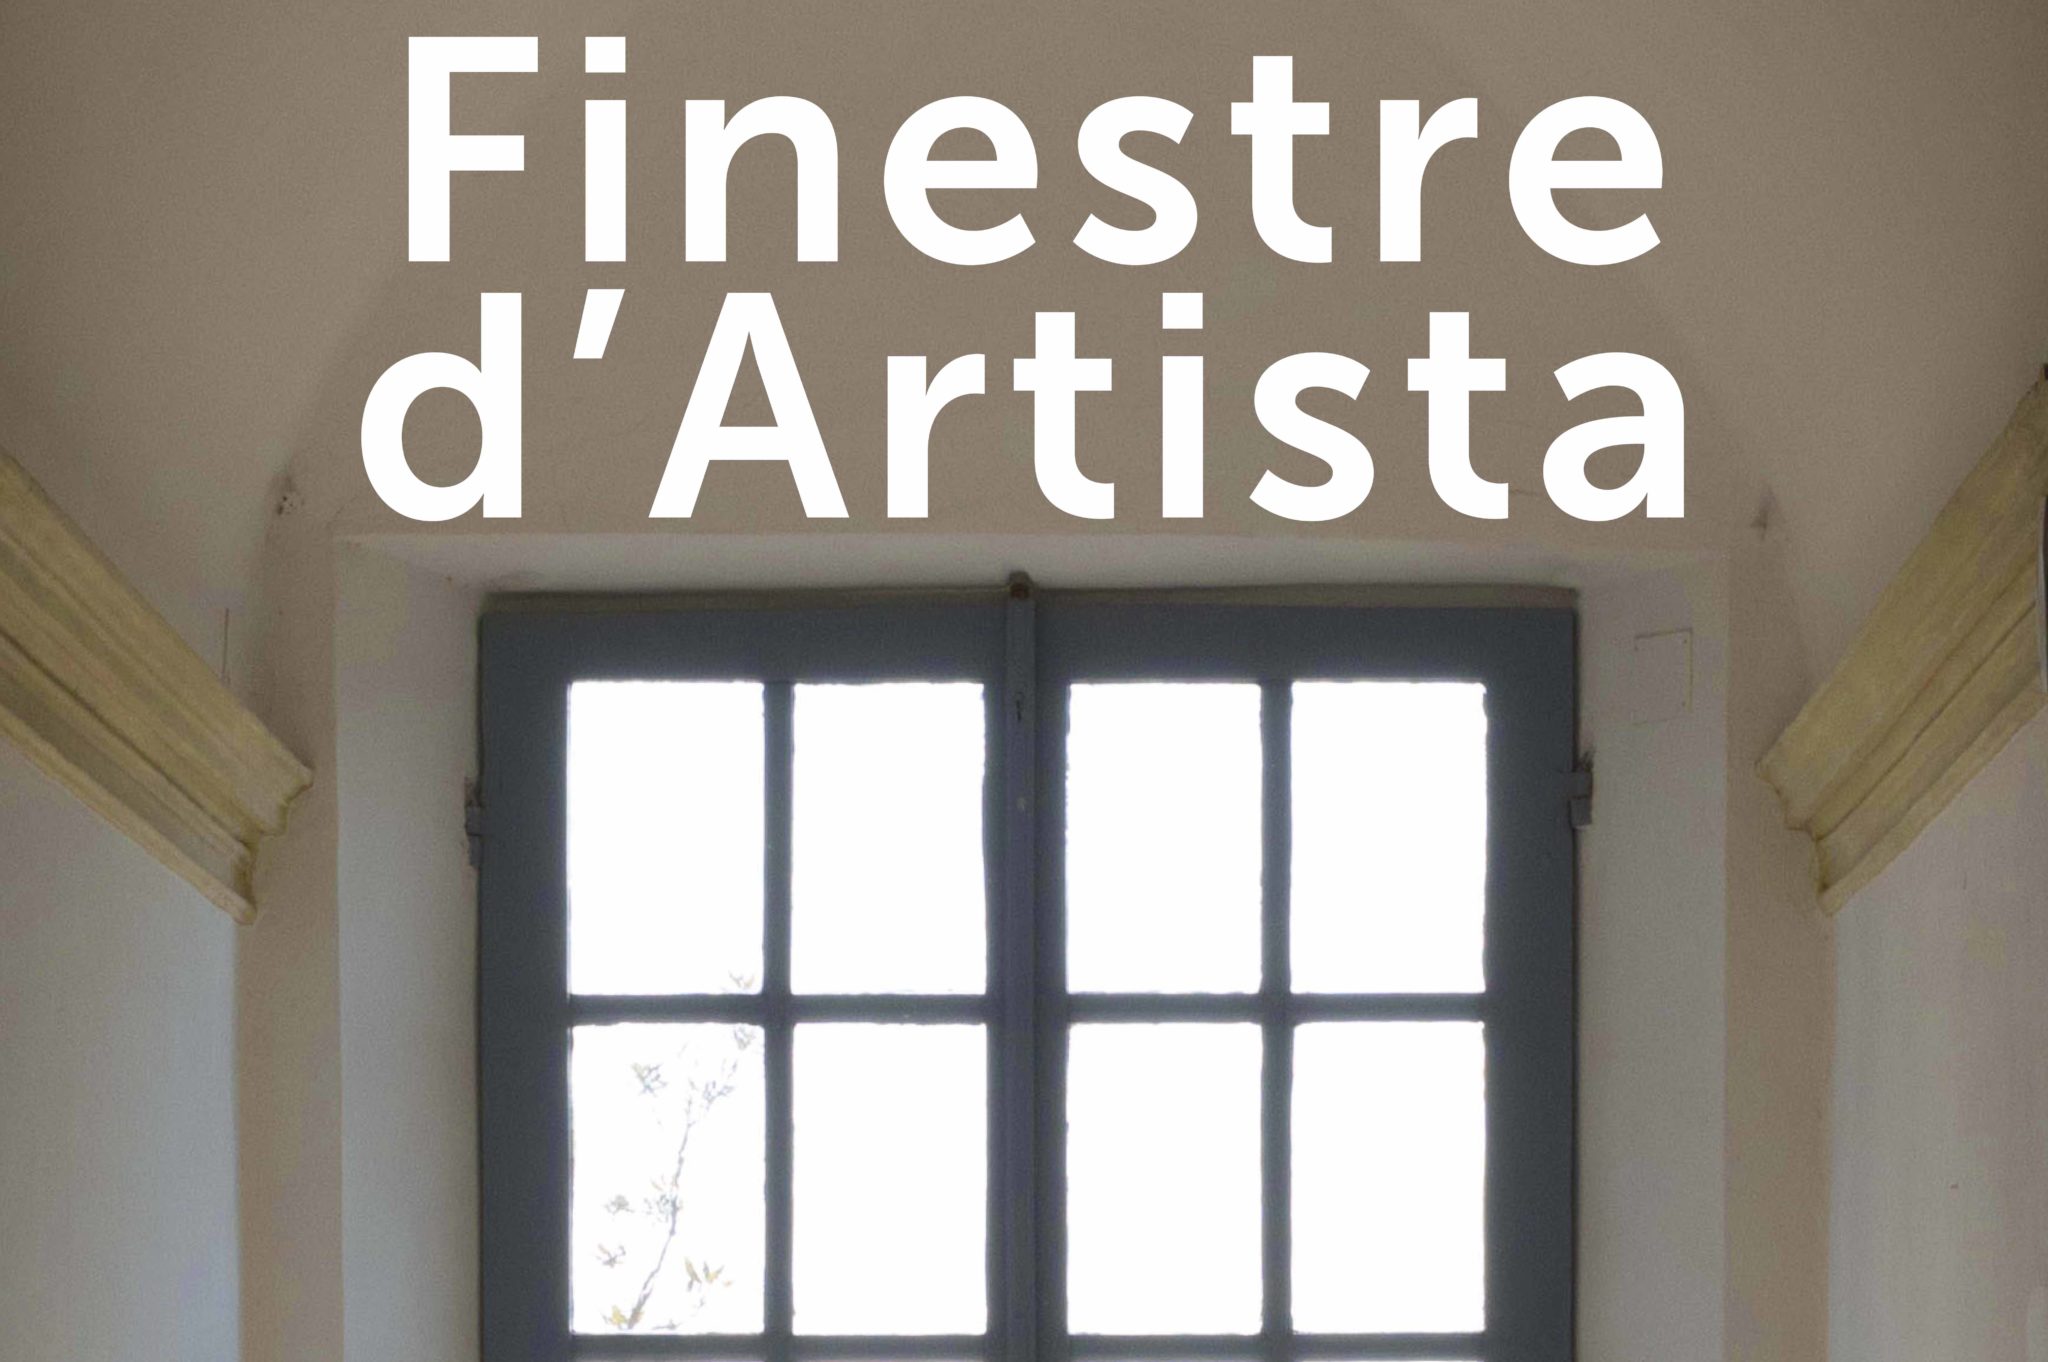 FINESTRE D’ARTISTA 2019